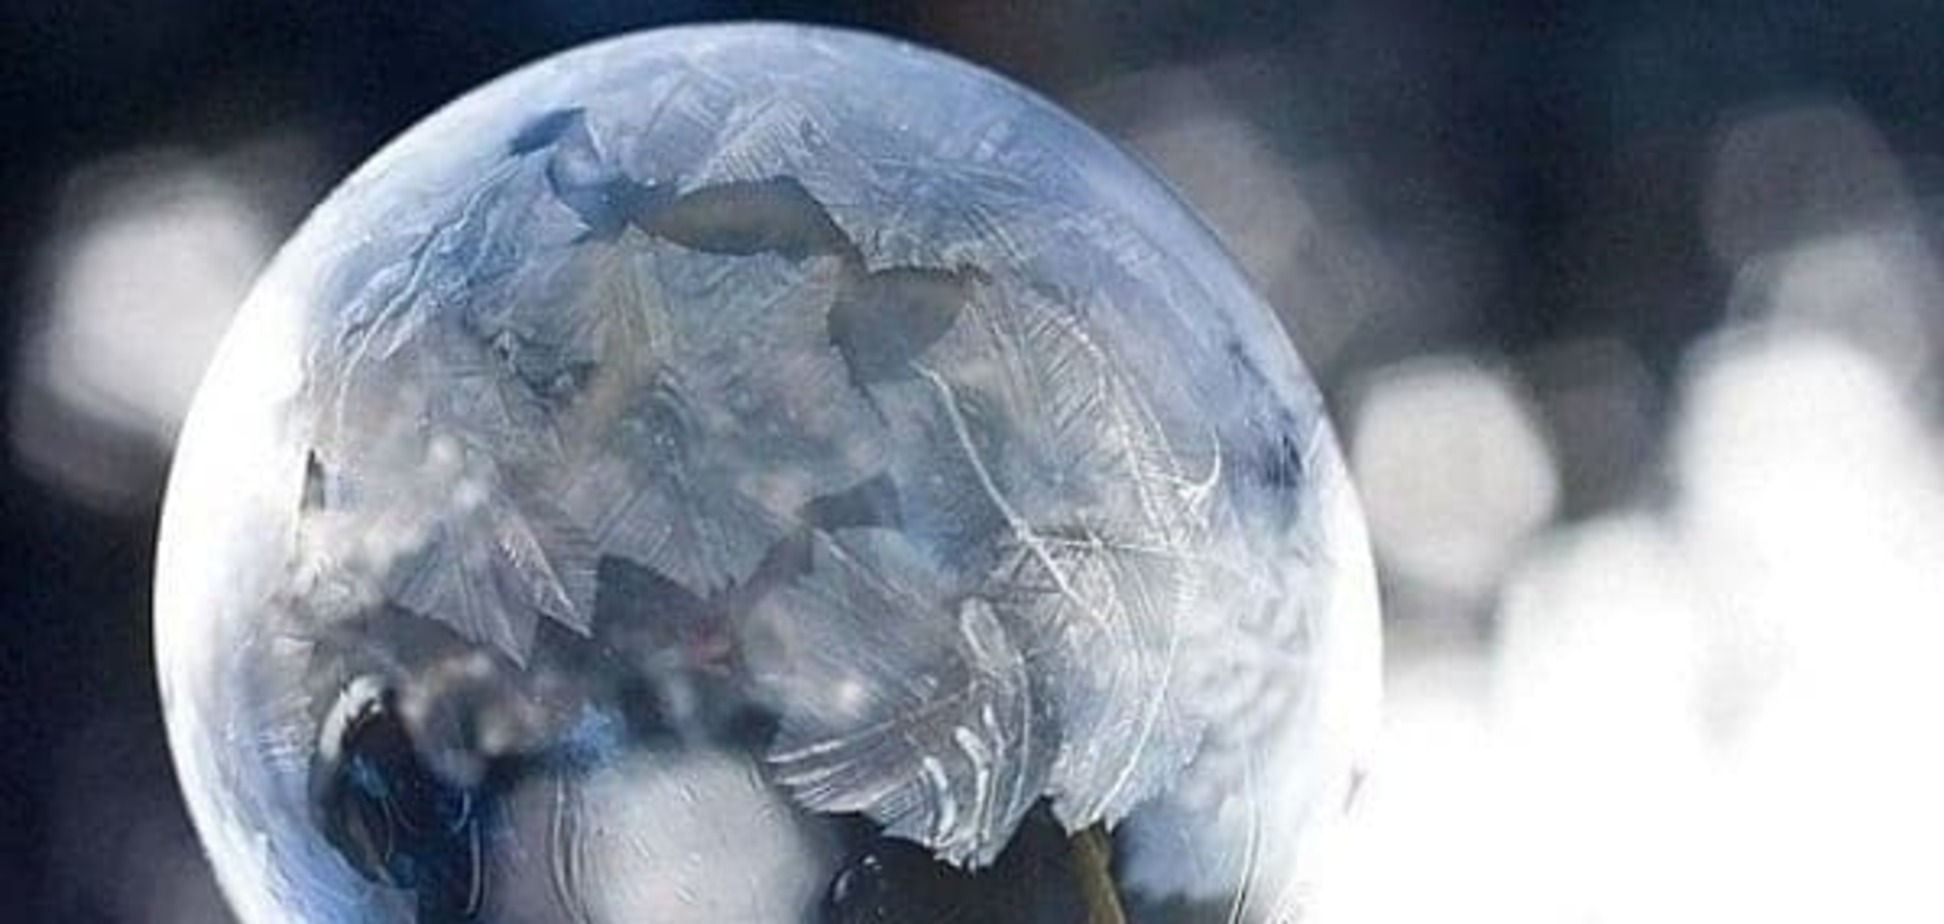 Мыльные пузыри на улице при минусовой температуре